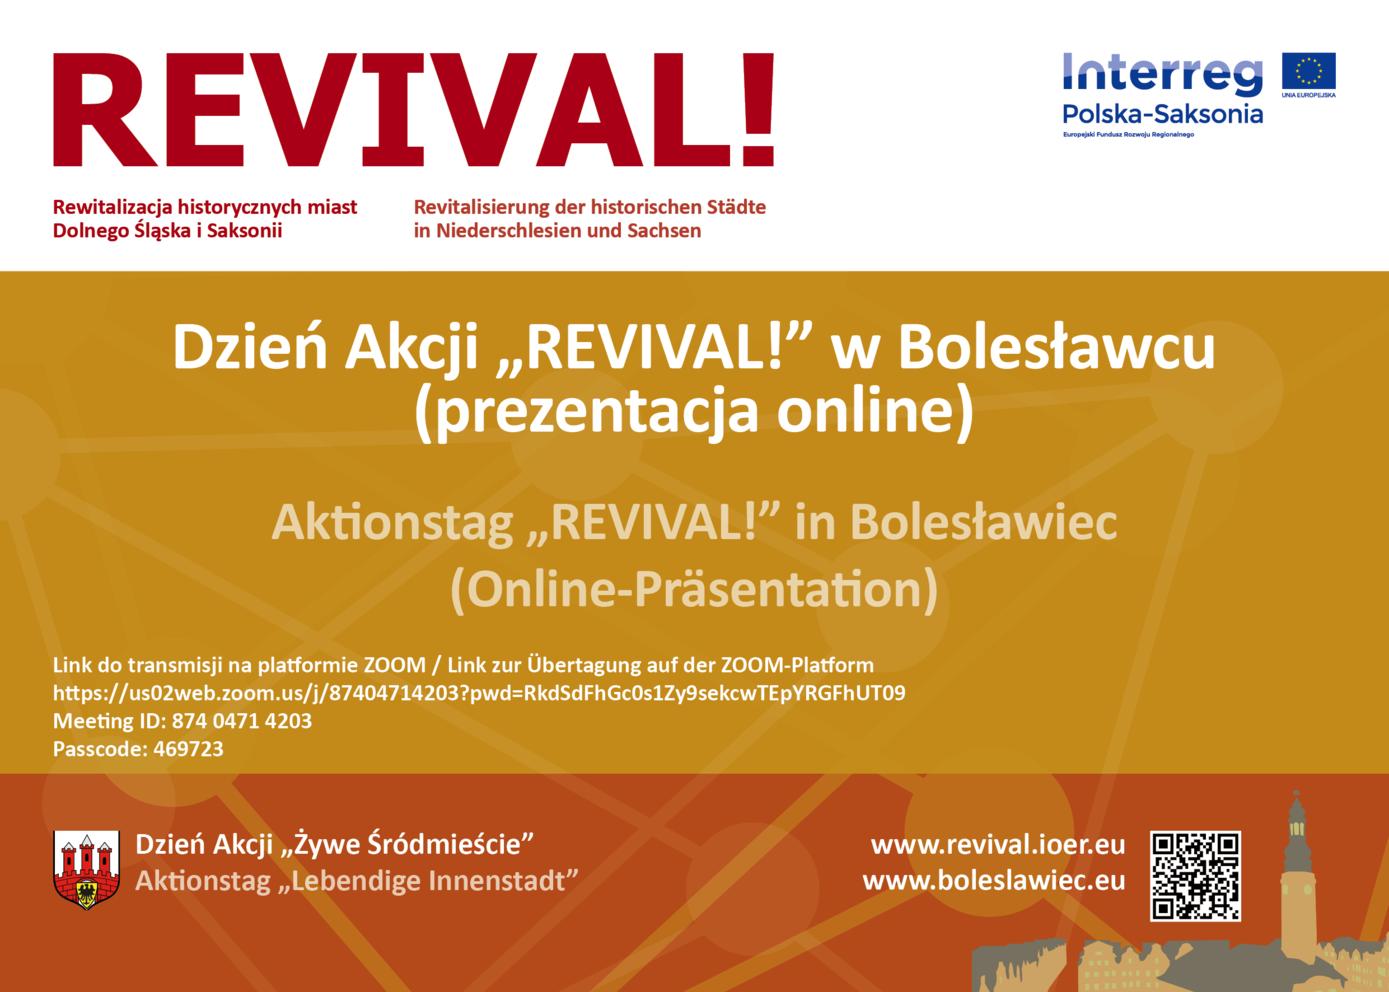 Dzień Akcji REVIVAL! w Bolesławcu